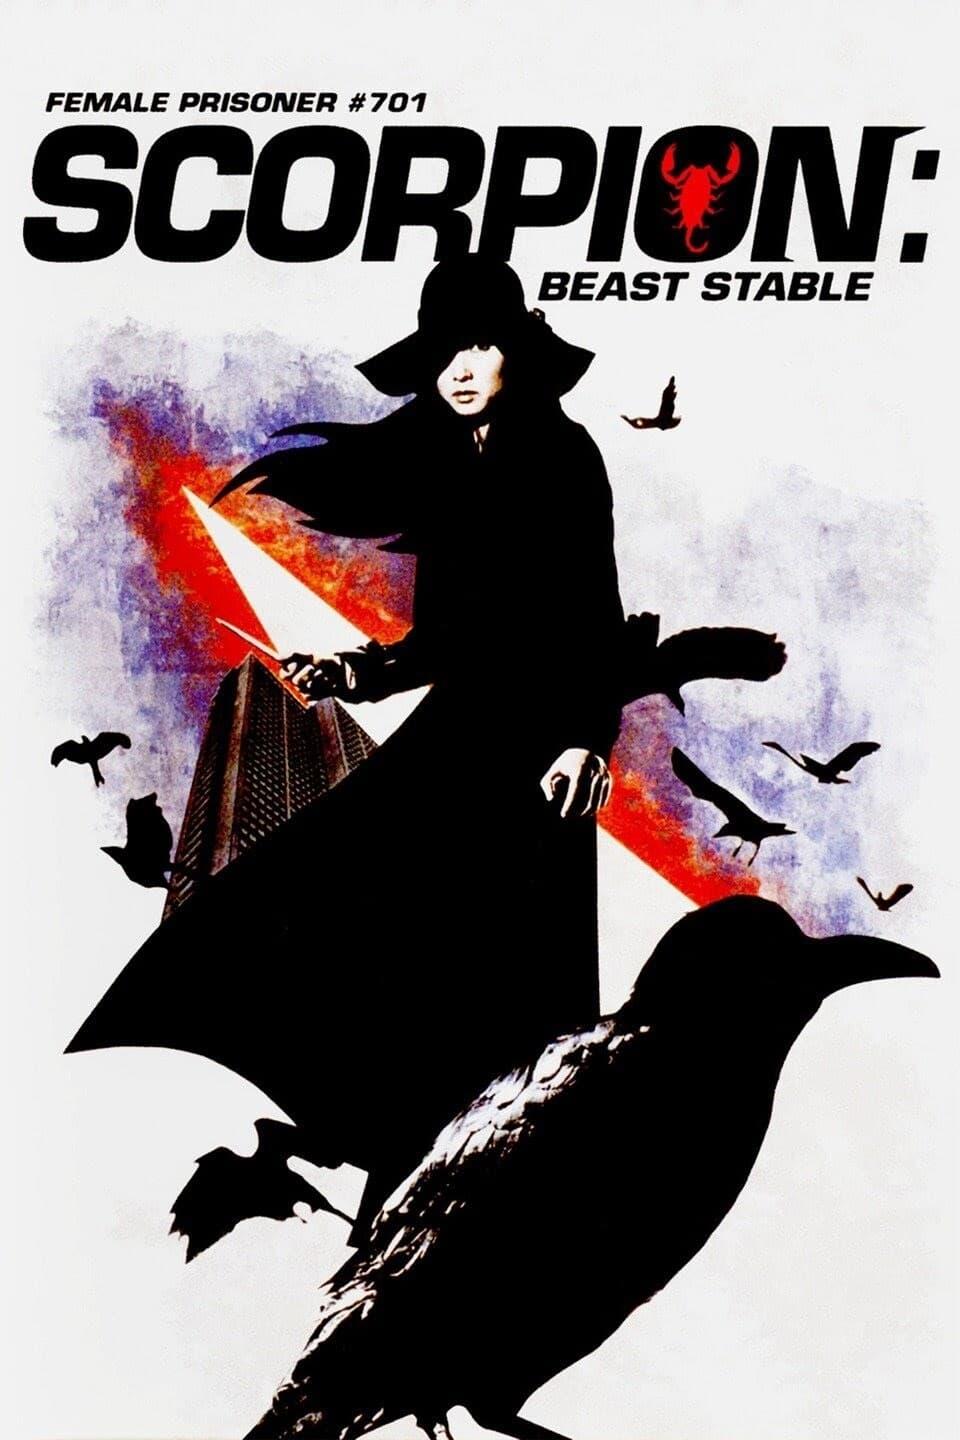 Female Prisoner Scorpion: Beast Stable poster